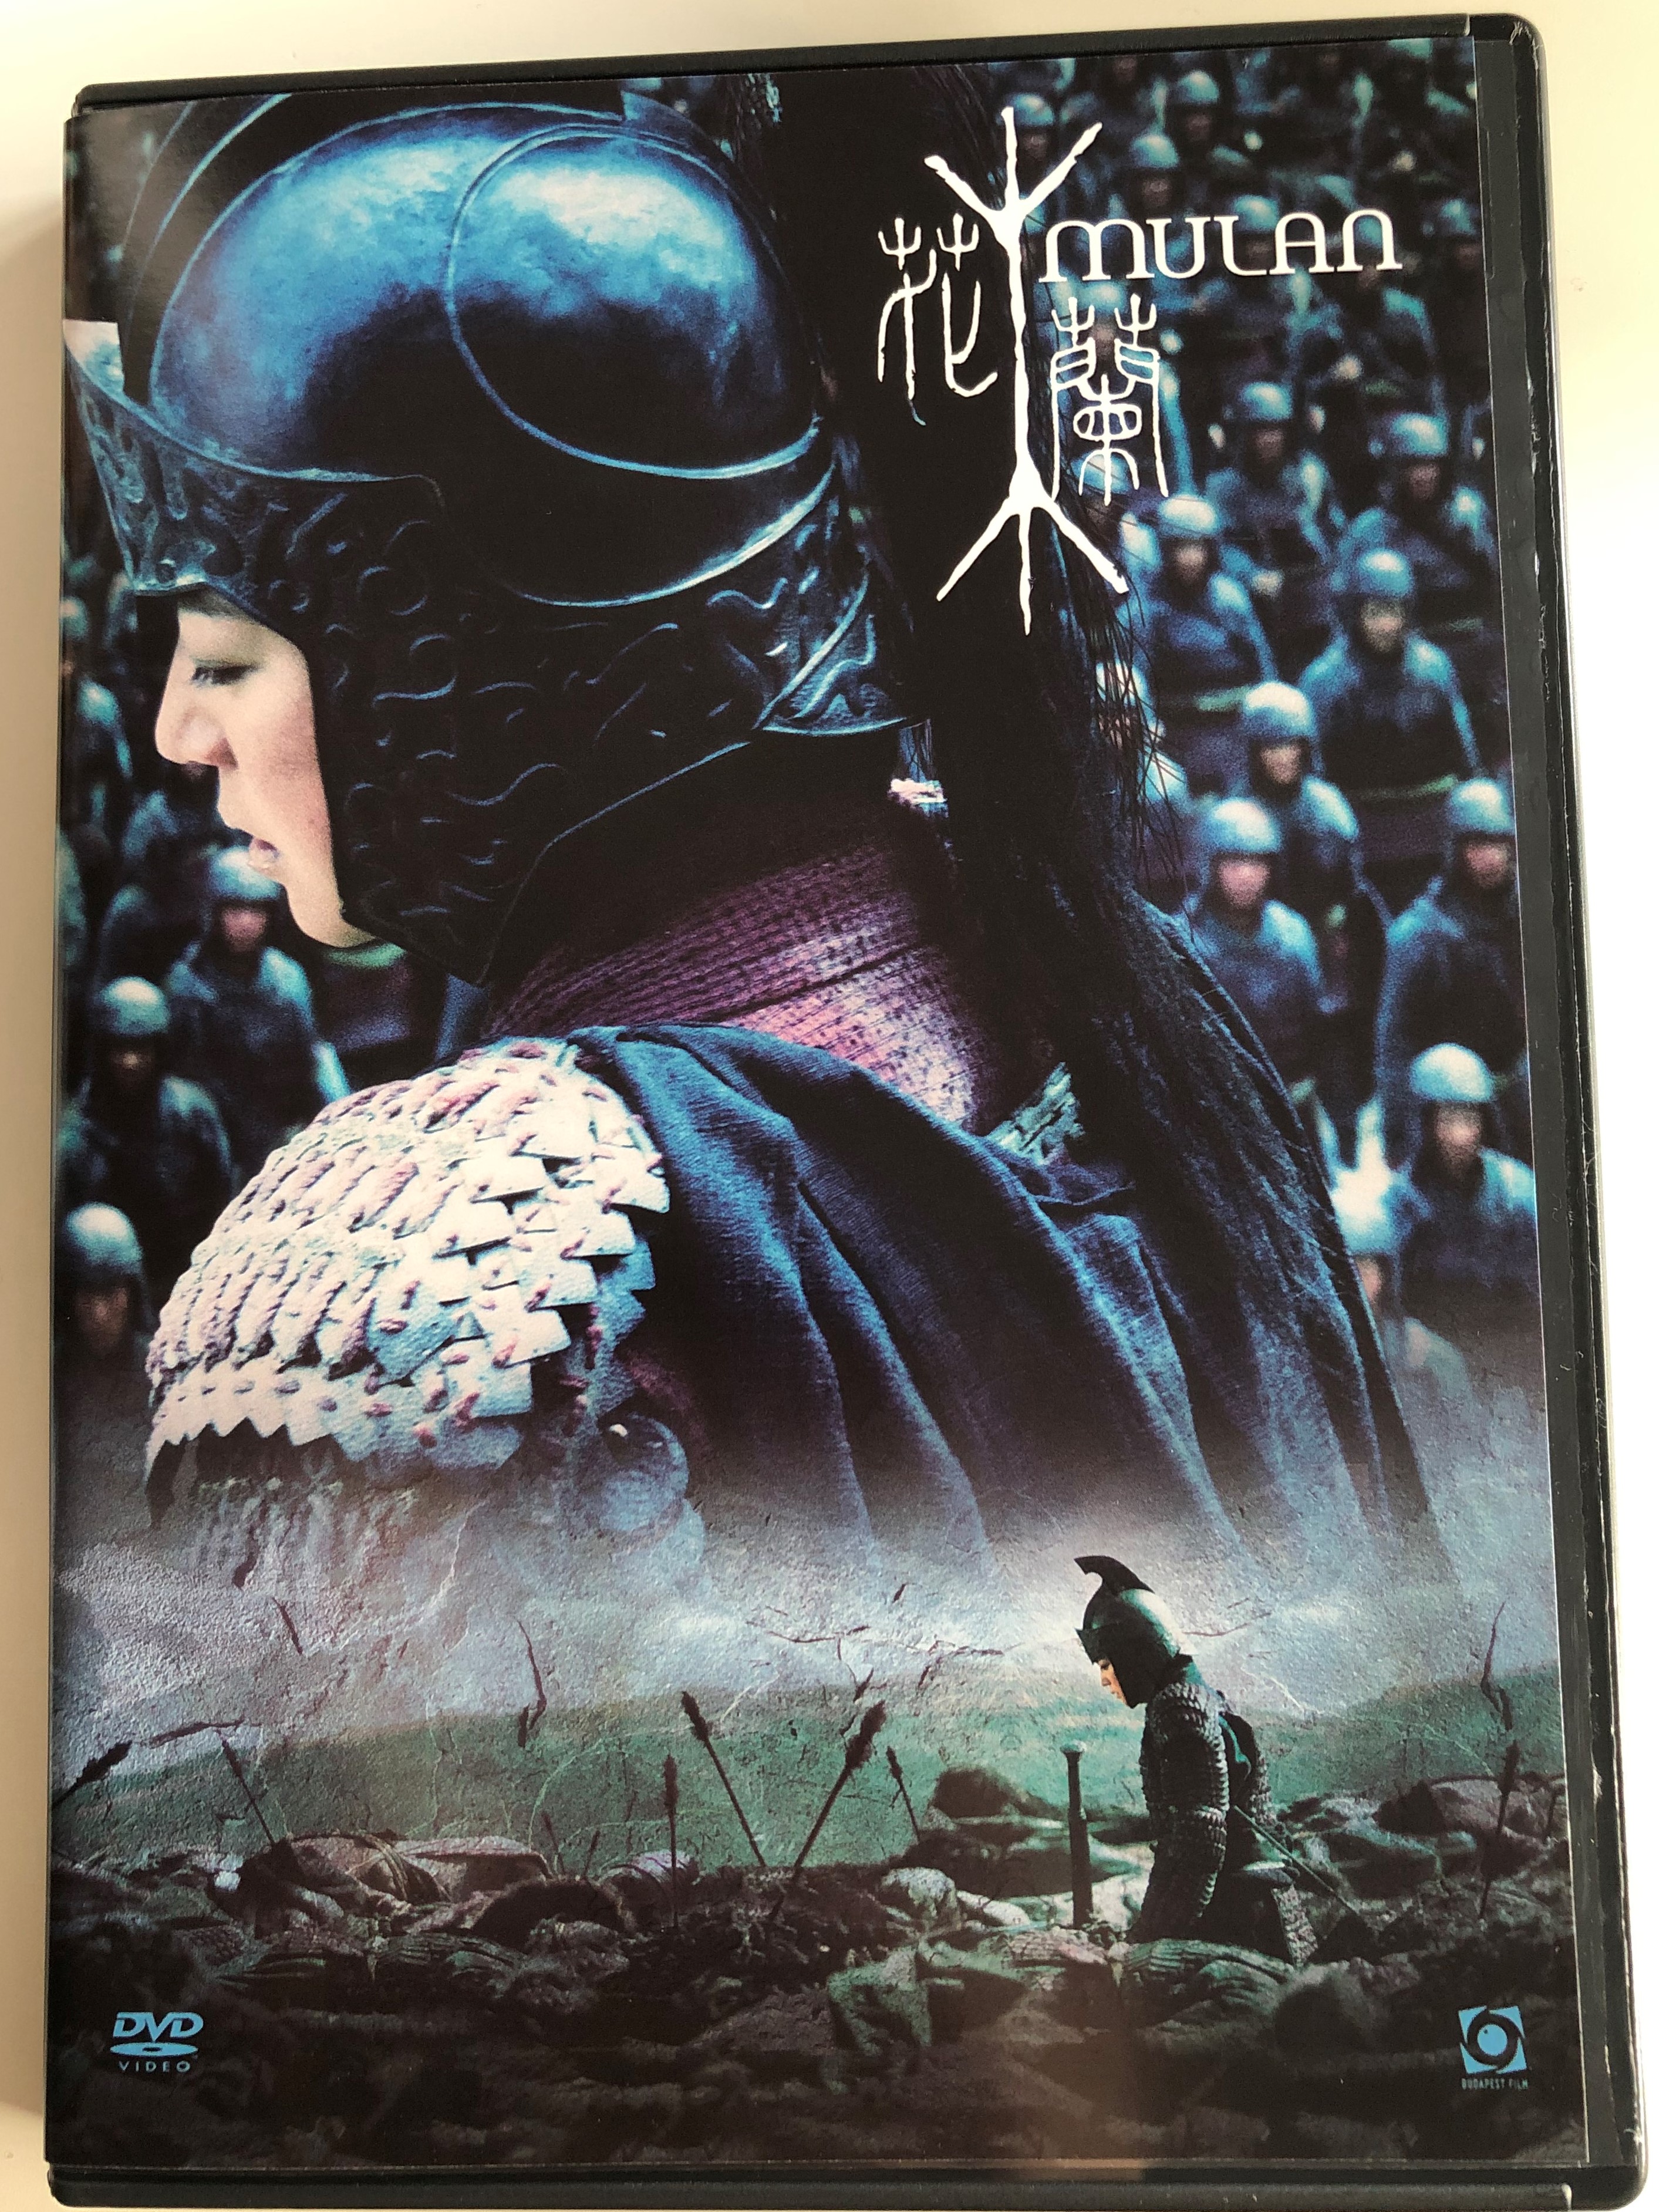 mulan-rise-of-a-warrior-dvd-2009-hu-m-l-n-directed-by-jingle-ma-1-.jpg